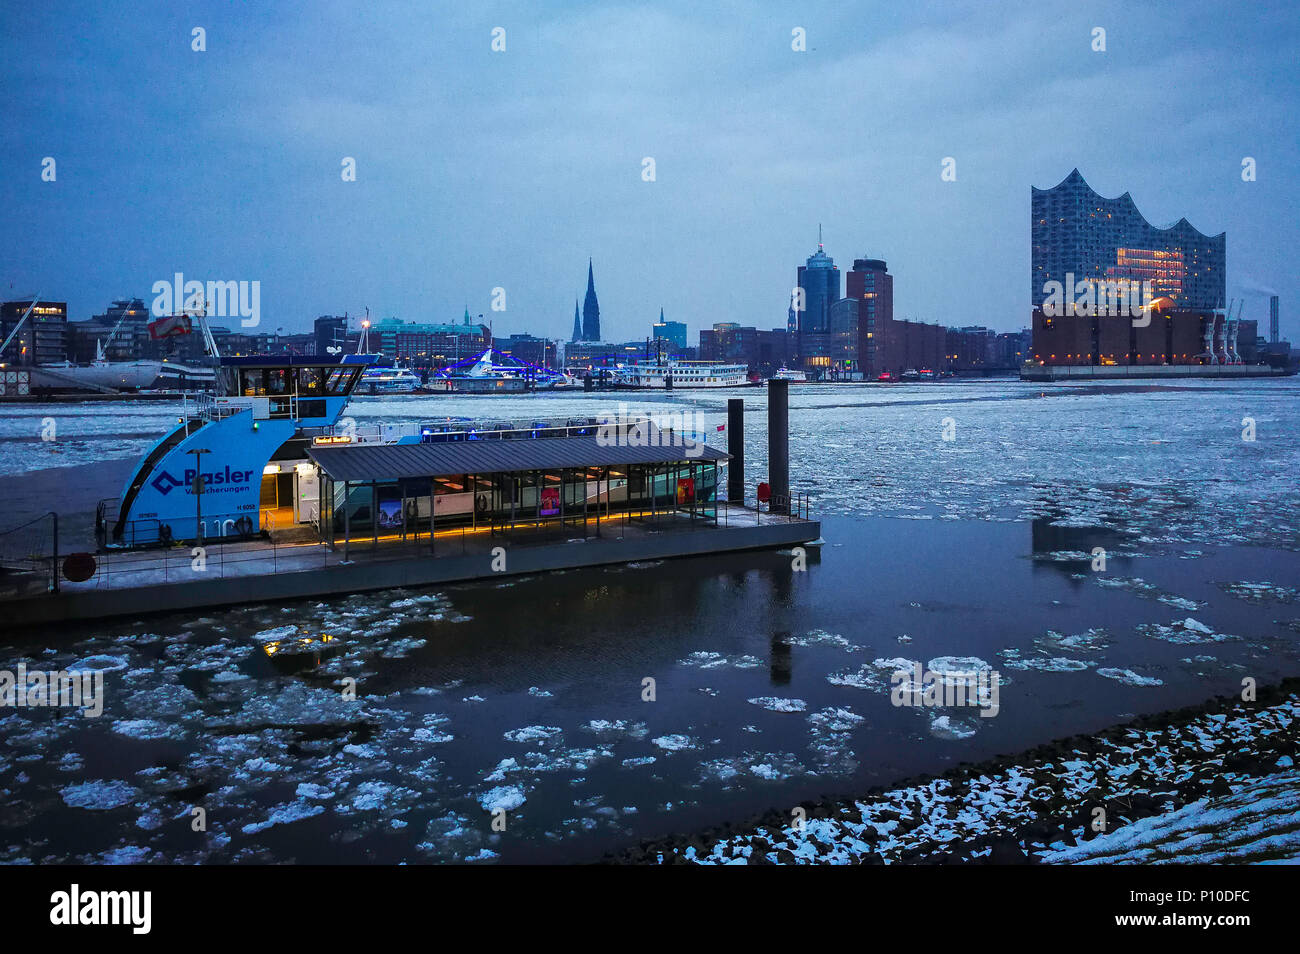 Sous la glace de l'Elbe, ferry-boats, l'Elbphilharmonie, Hambourg, Allemagne Banque D'Images